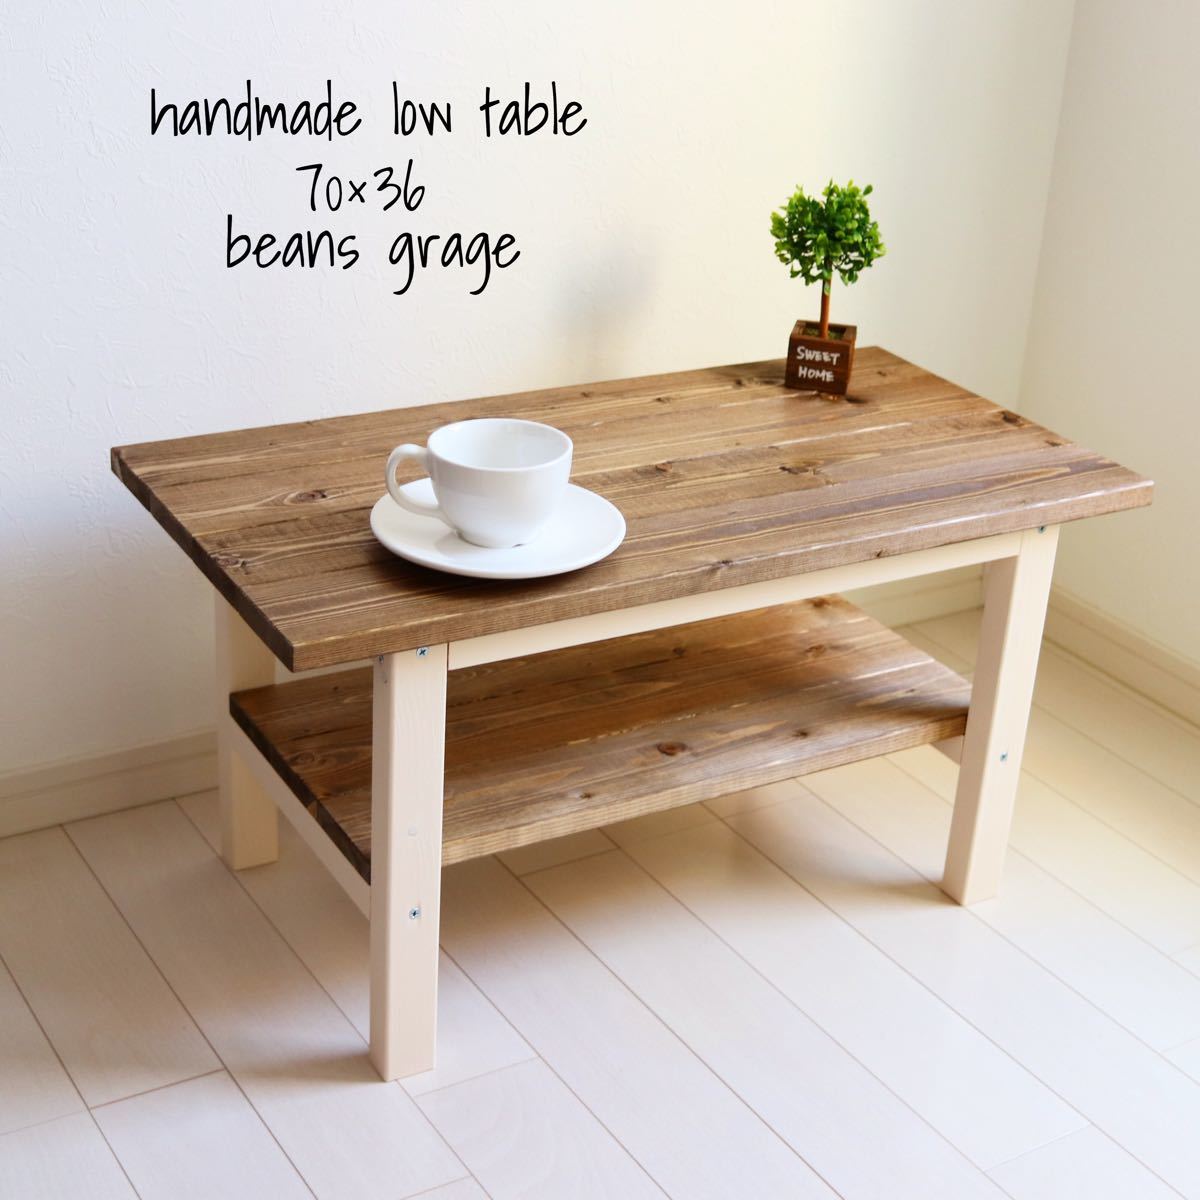 ローテーブル 70×36 無垢材 カフェスタイル ハンドメイド コーヒー 